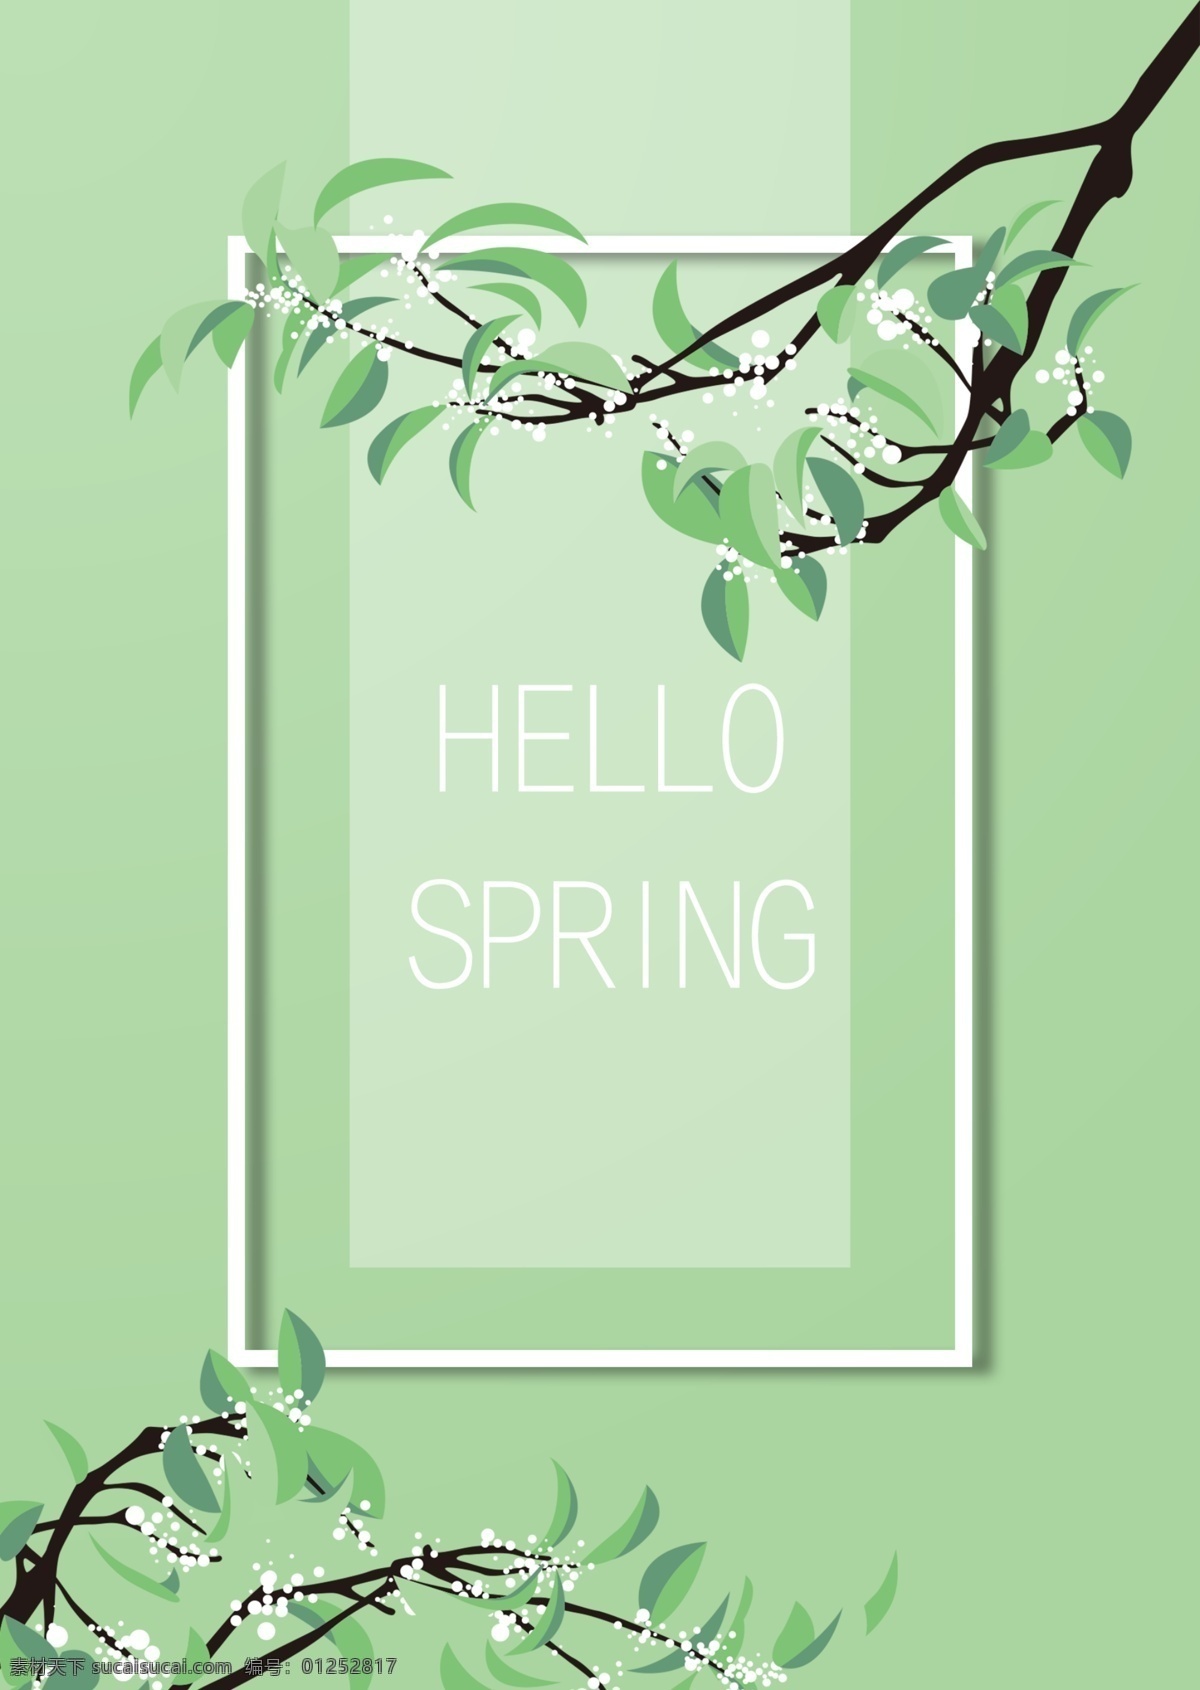 绿色 清新 风 白花 树枝 春季 促销 海报 春天 鲜花 花瓣 英文 打折 季节 盛开